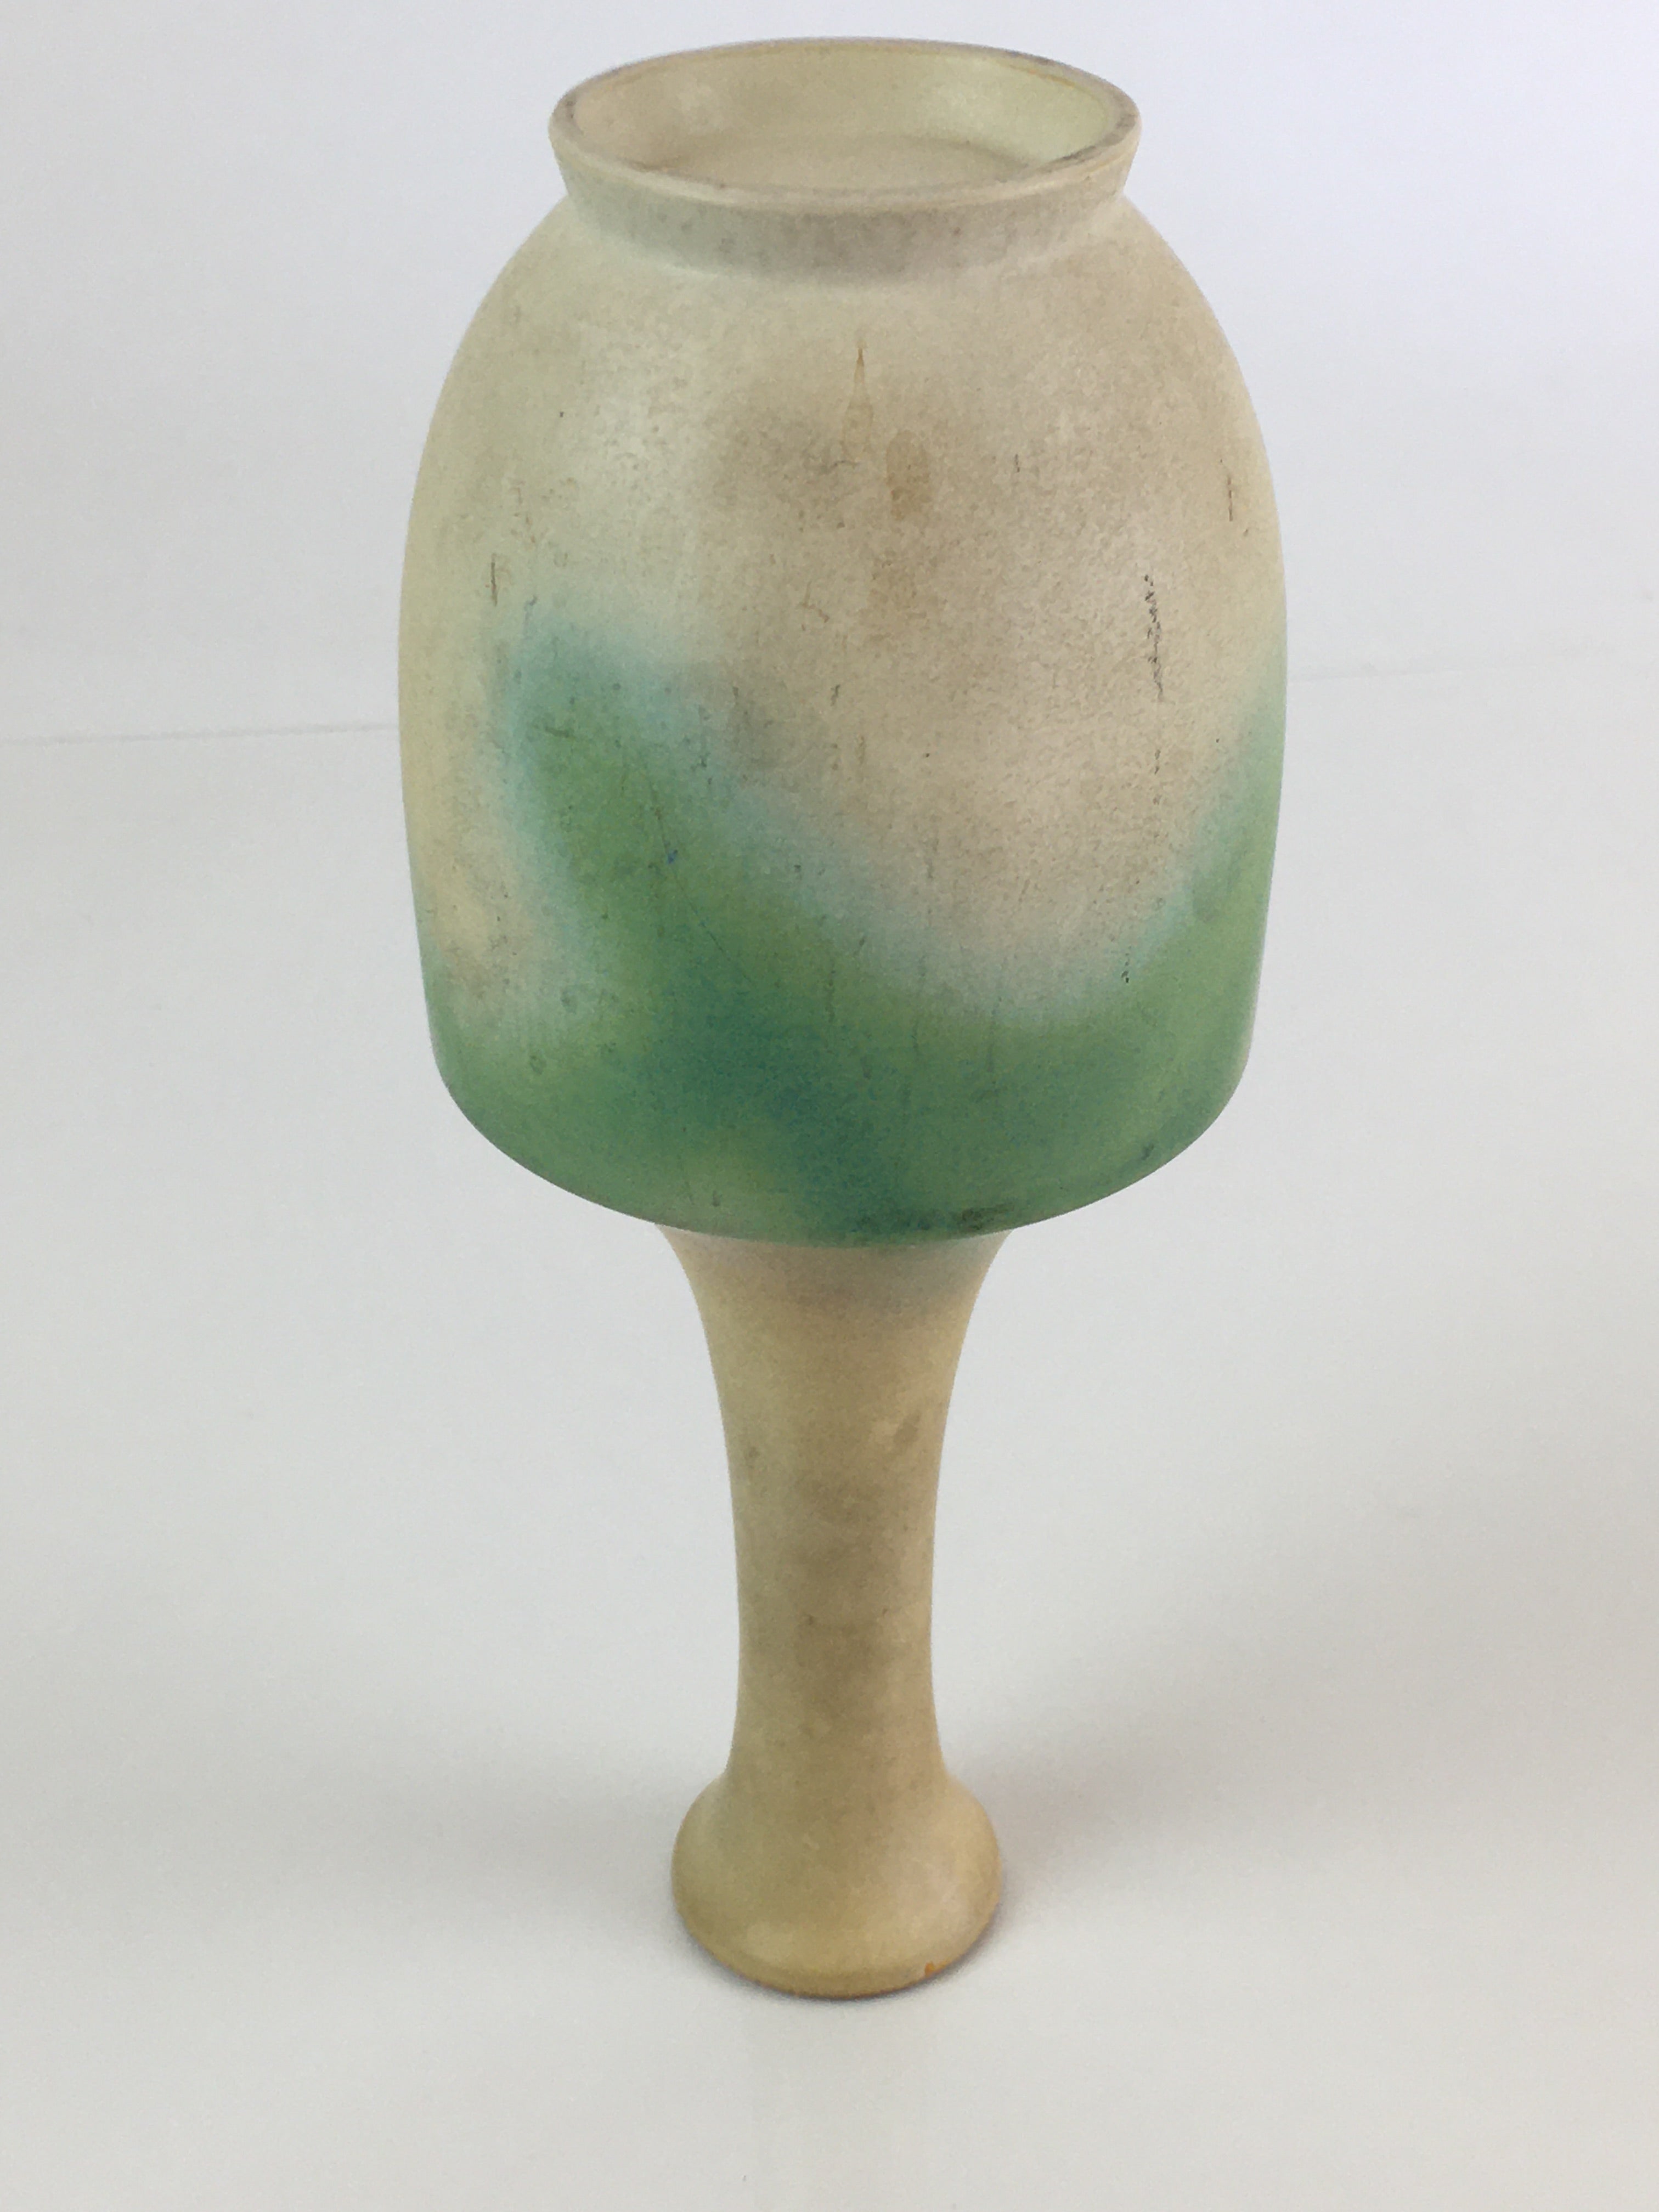 Japanese Ceramic Flower Vase Kabin Vtg White Green Pottery Ikebana FK2